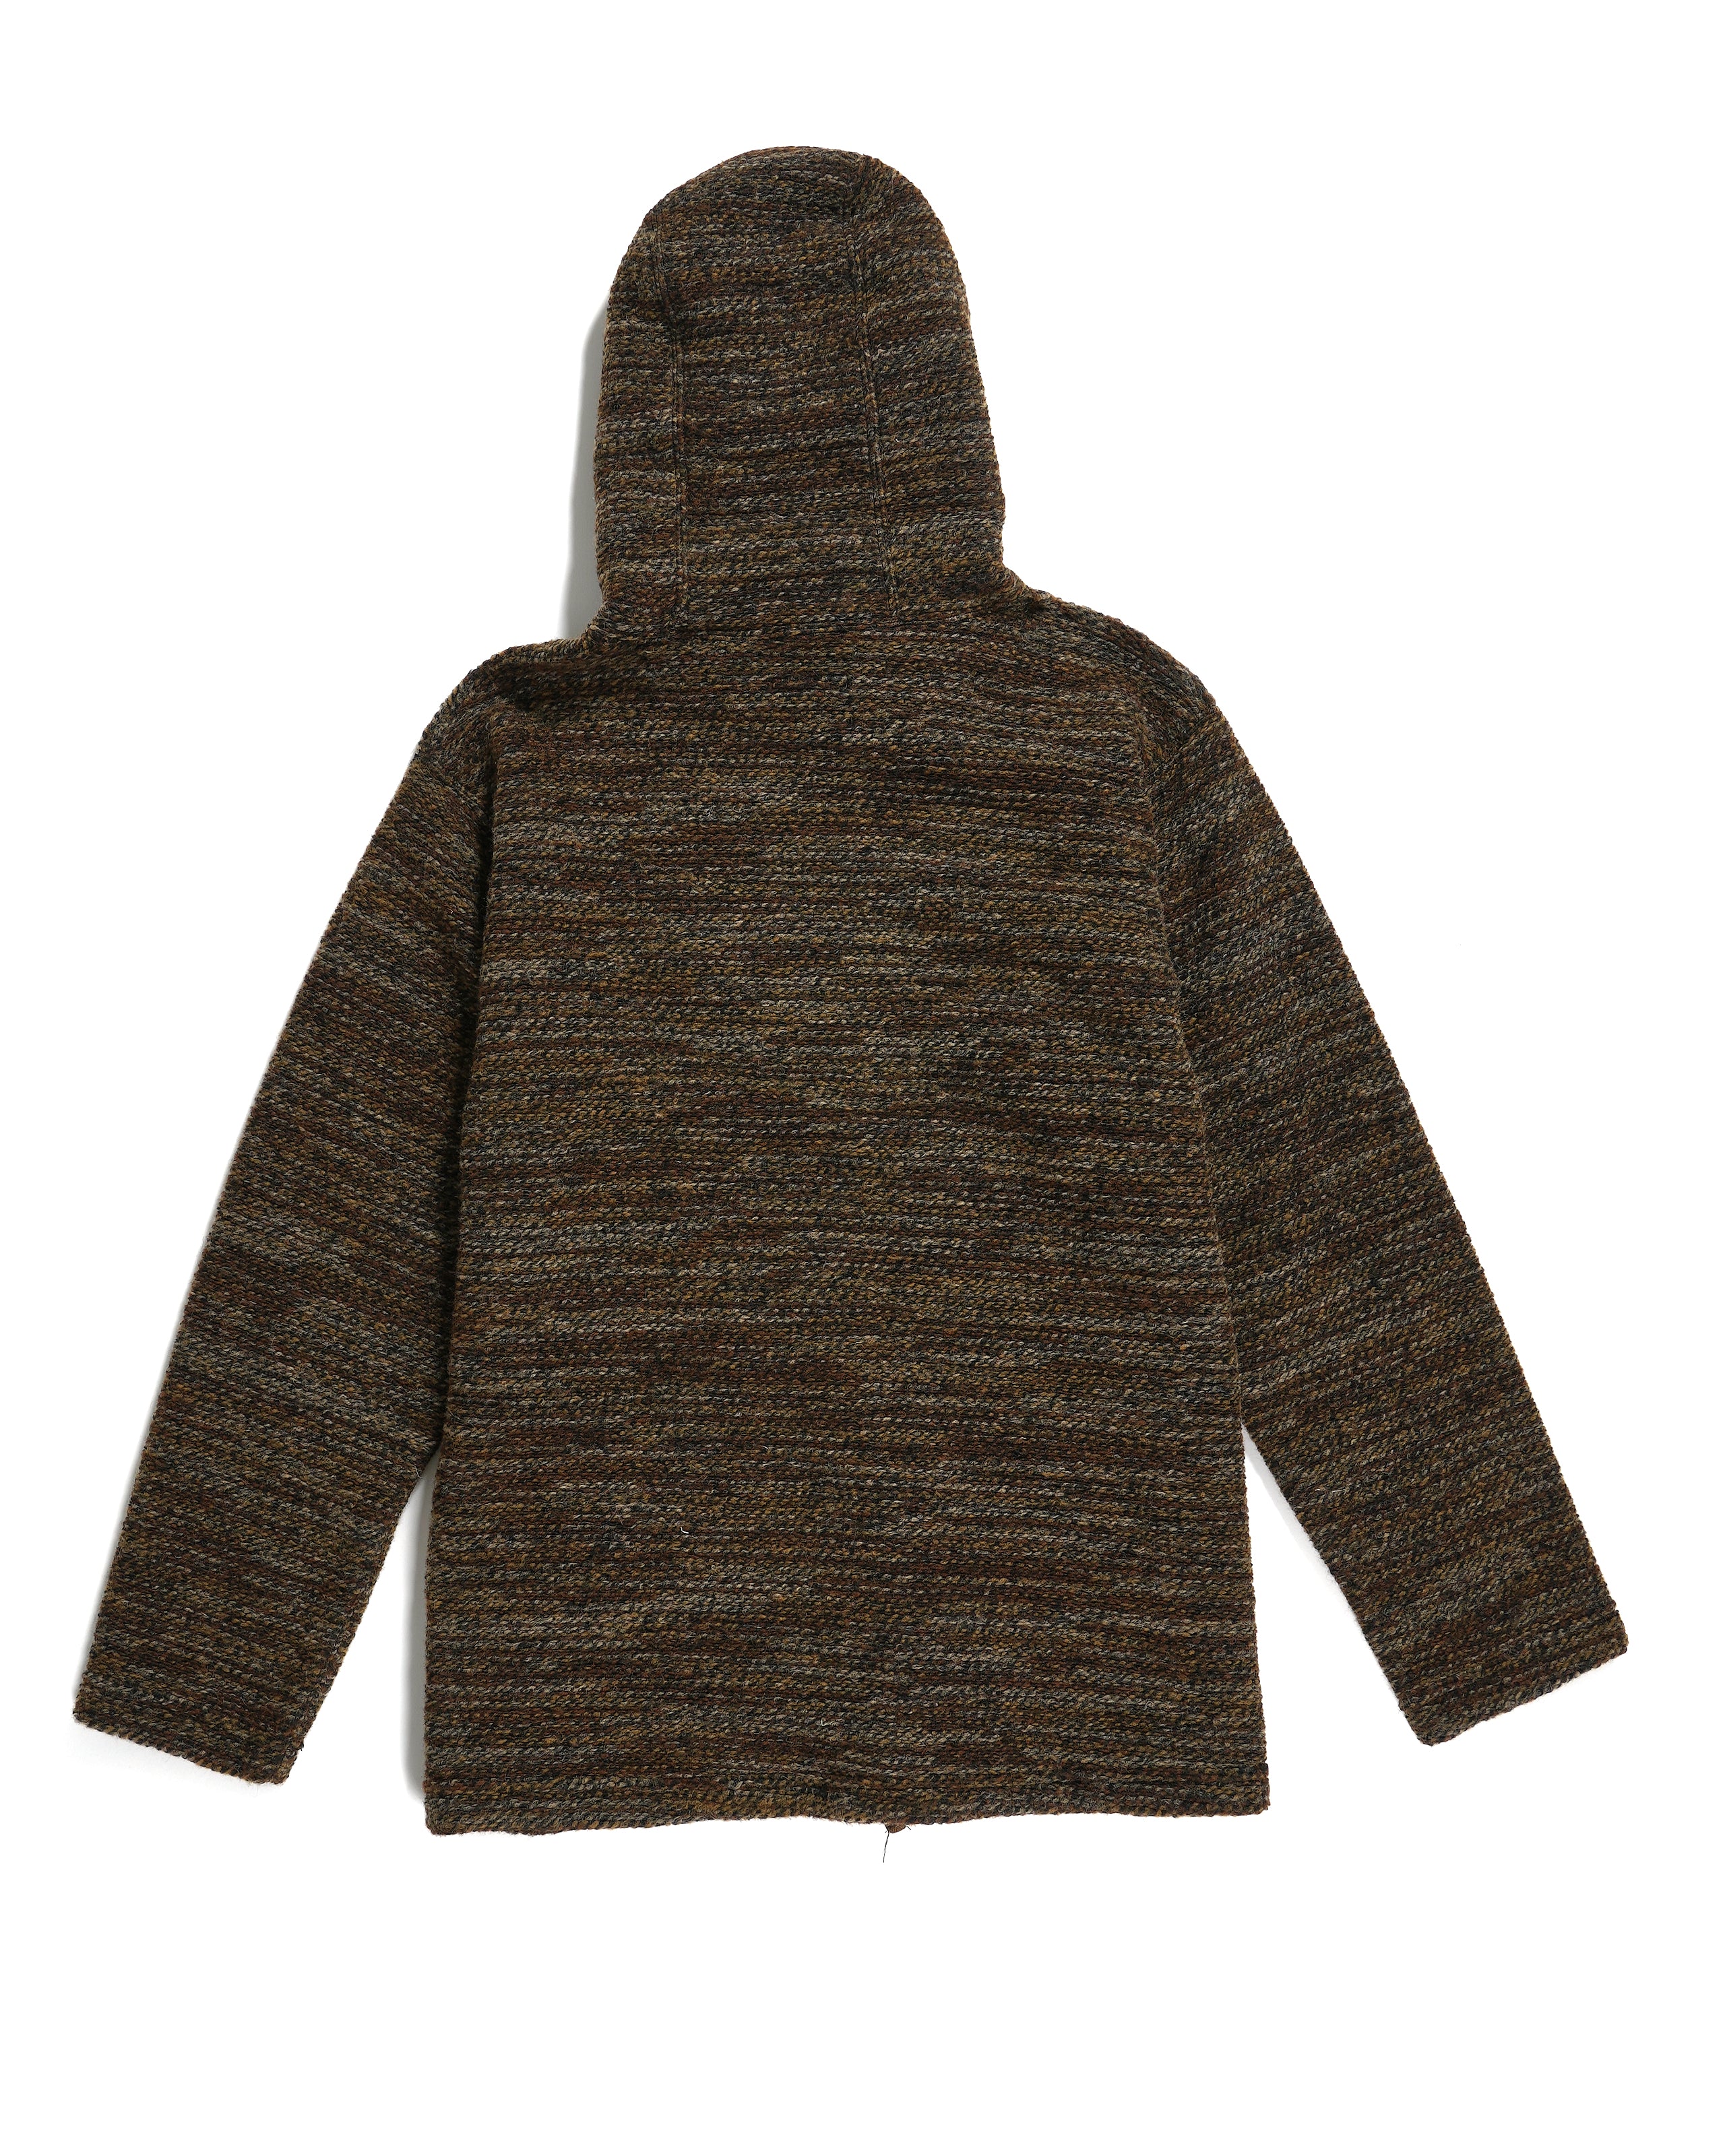 Long Sleeve Hoody - Brown Poly Wool Melange Knit